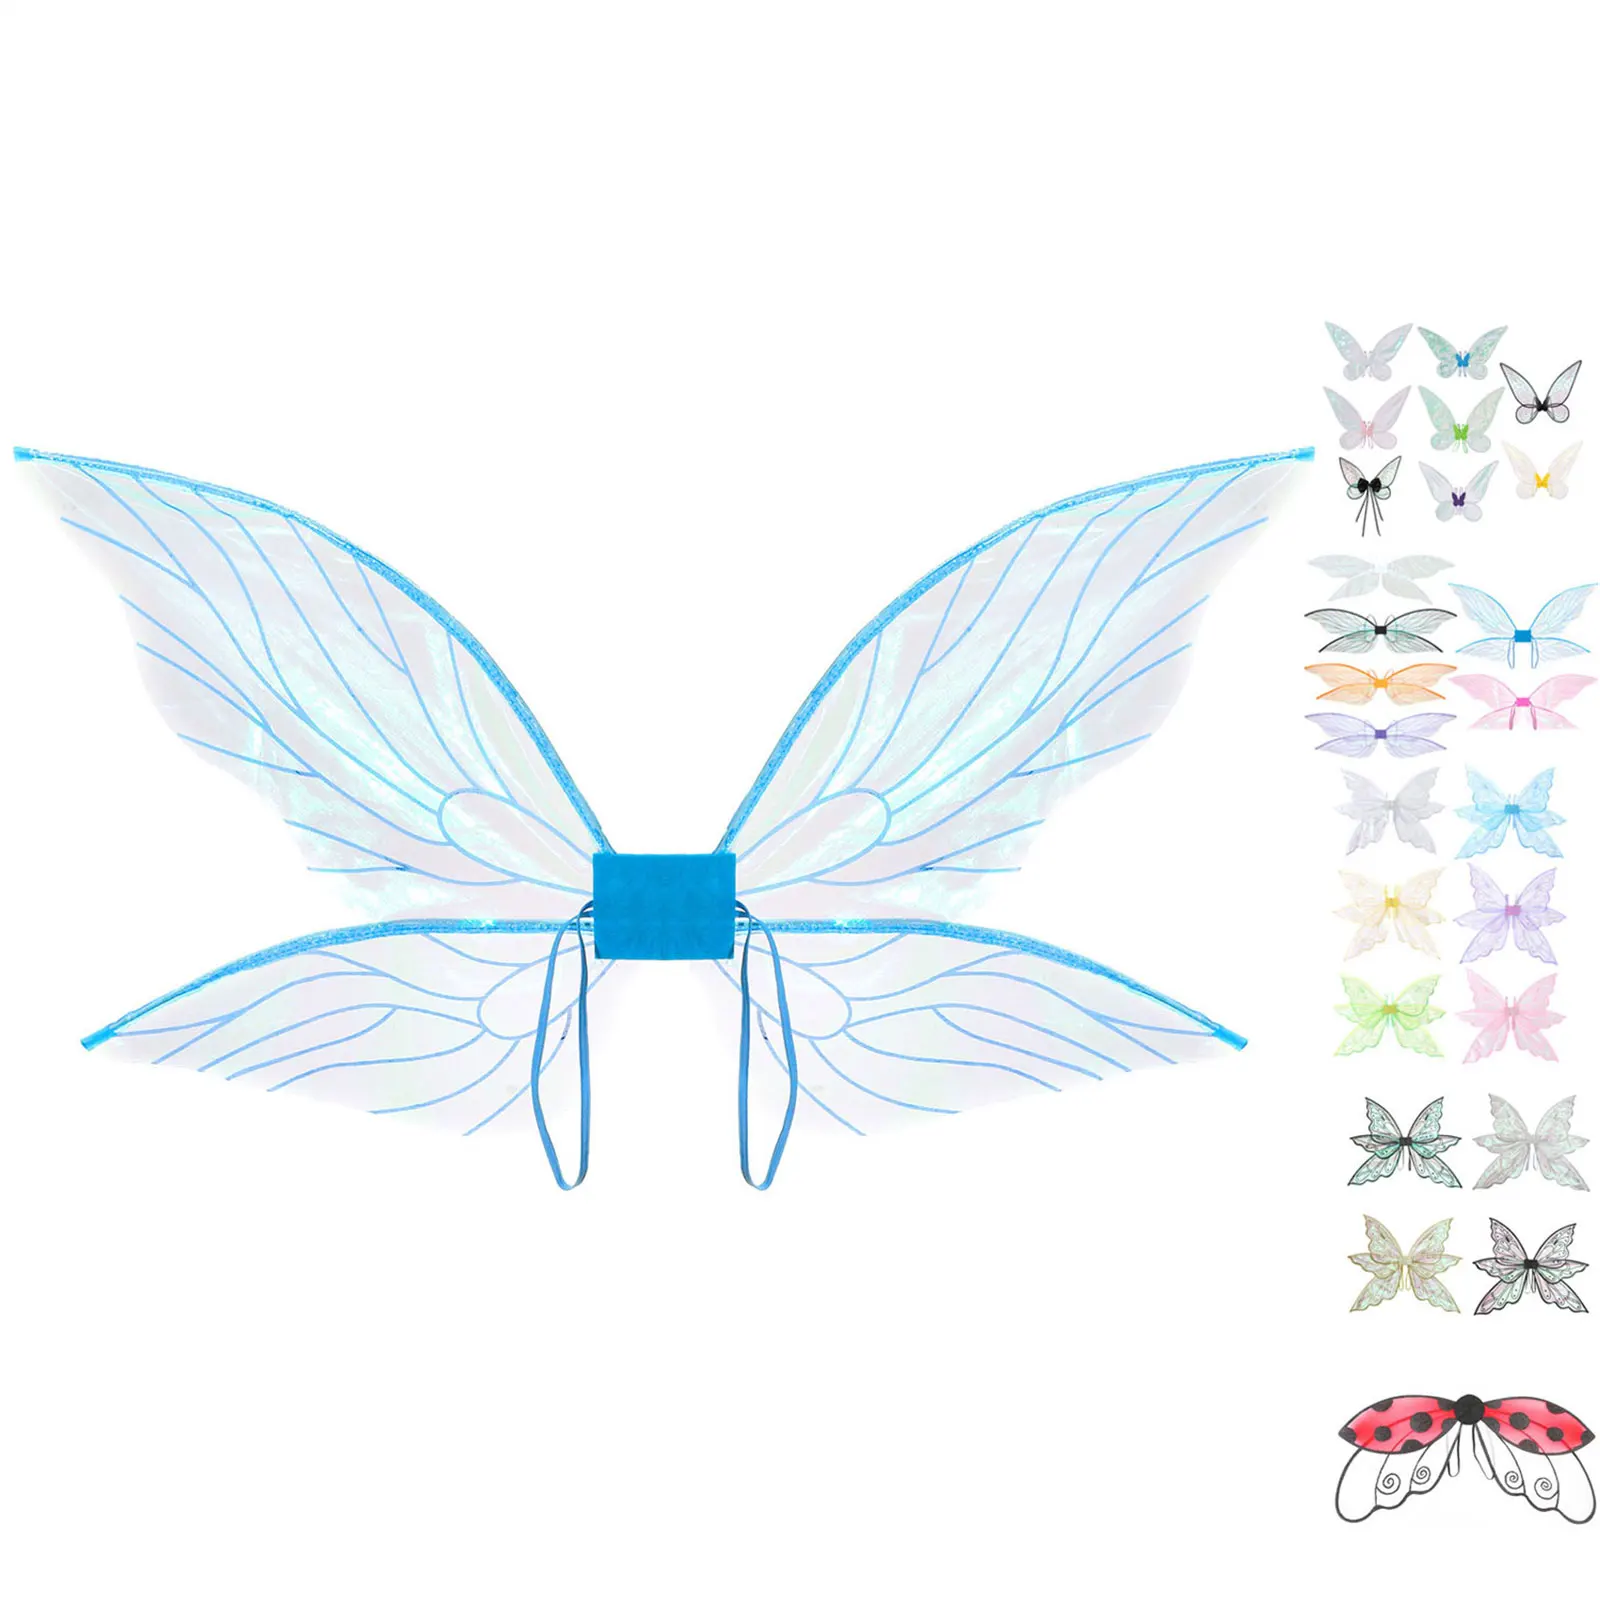 Волшебный мир Крылья бабочки Крылья принцессы Ангела Хэллоуин Карнавал Косплей День защиты детей Реквизит для представления Блестящие крылья Феи